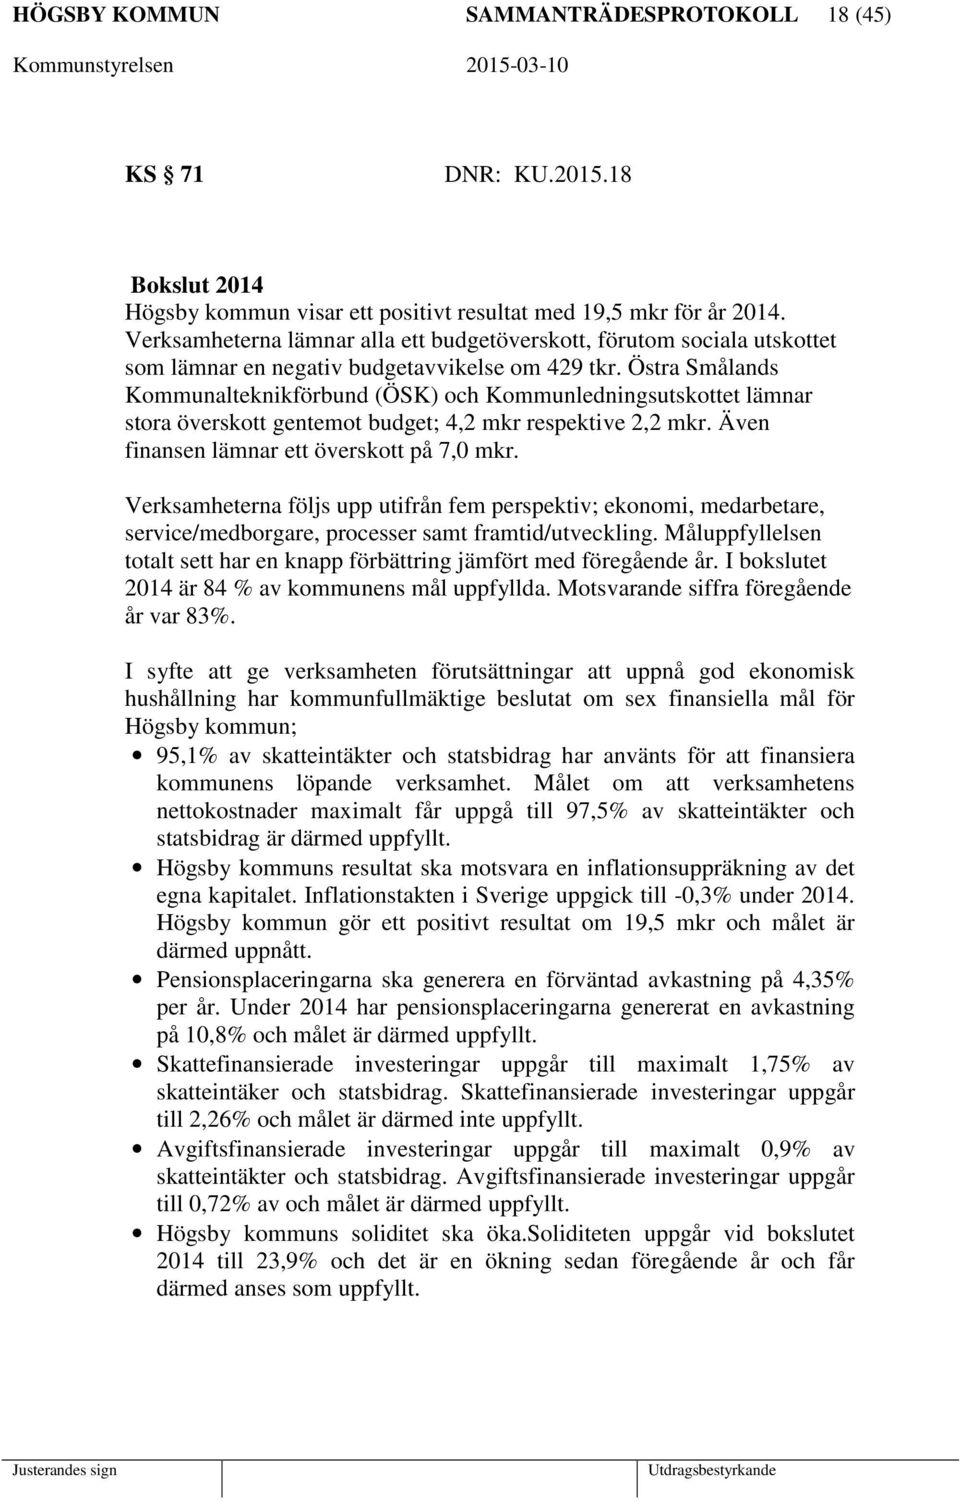 Östra Smålands Kommunalteknikförbund (ÖSK) och Kommunledningsutskottet lämnar stora överskott gentemot budget; 4,2 mkr respektive 2,2 mkr. Även finansen lämnar ett överskott på 7,0 mkr.